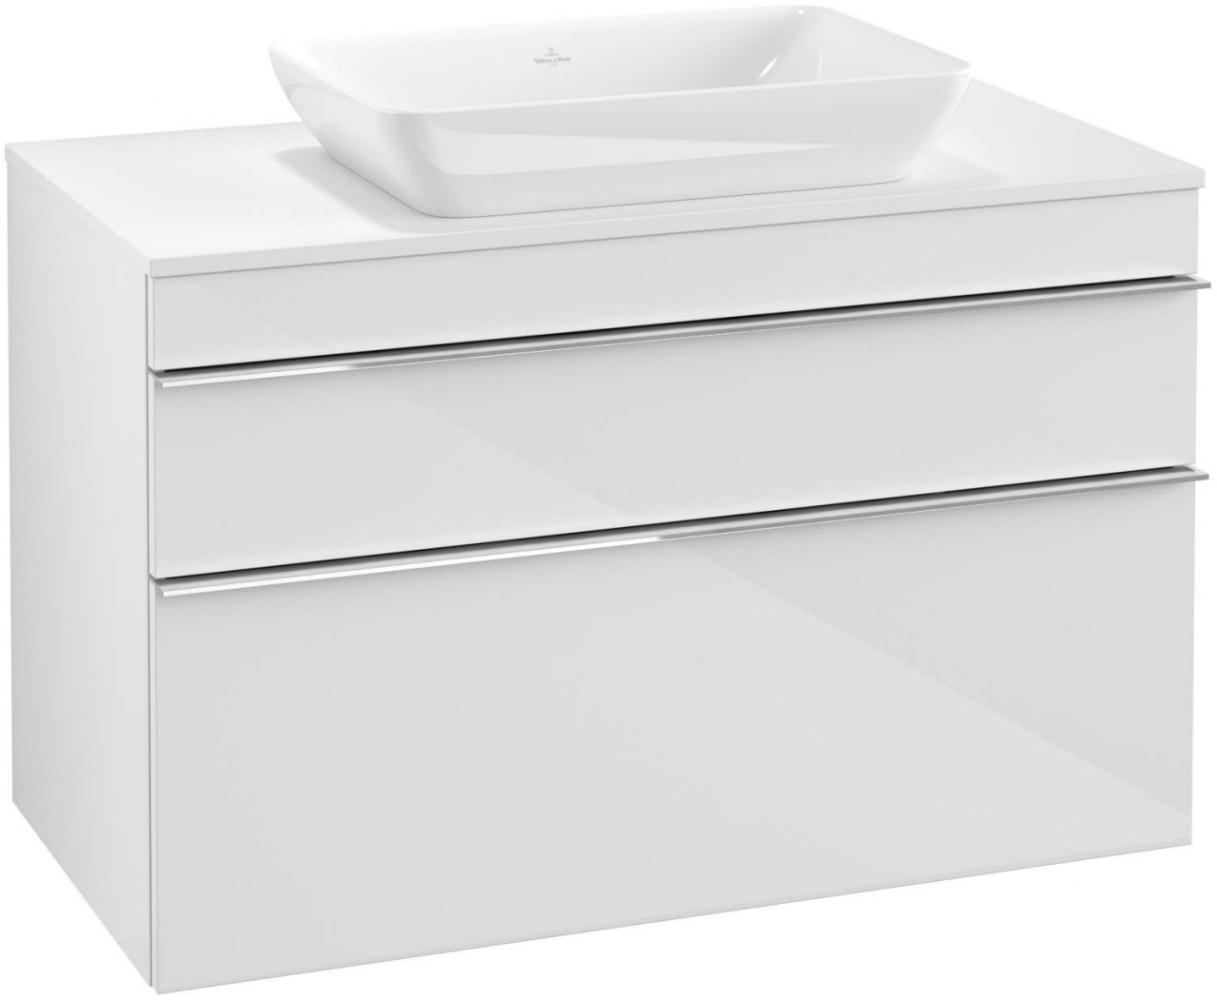 Villeroy & Boch VENTICELLO Waschtischunterschrank 95 cm breit, Weiß, Griff Chrom Bild 1